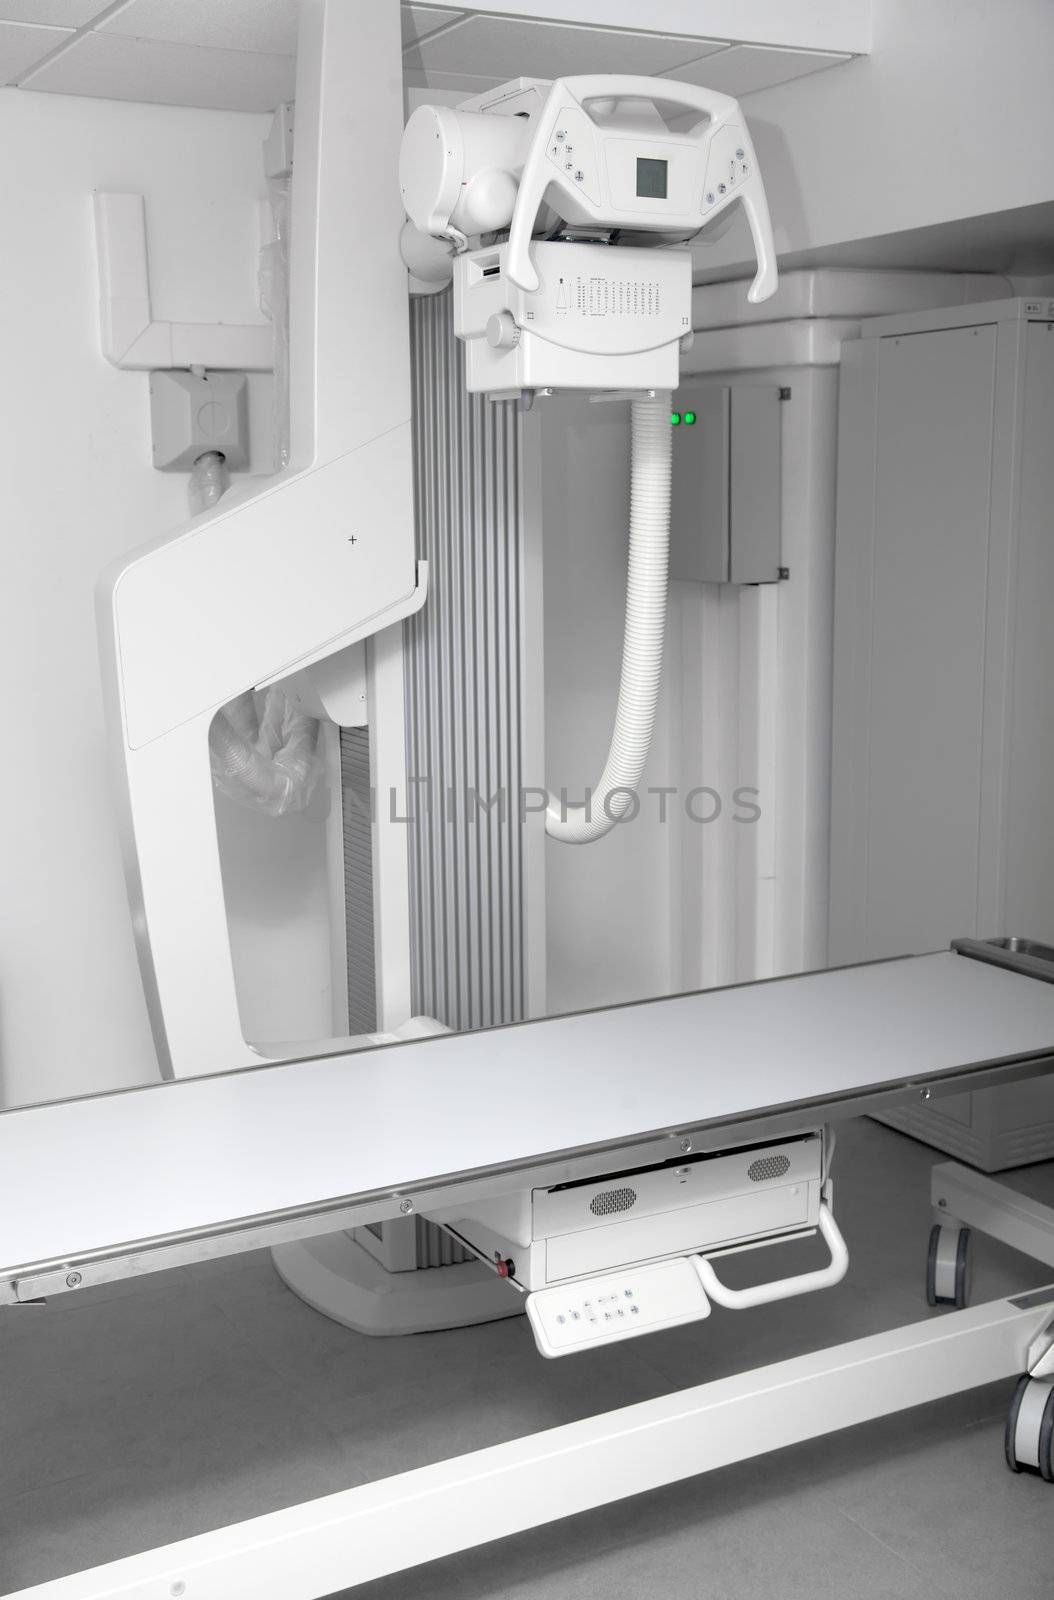 x-ray digital machine by Portokalis